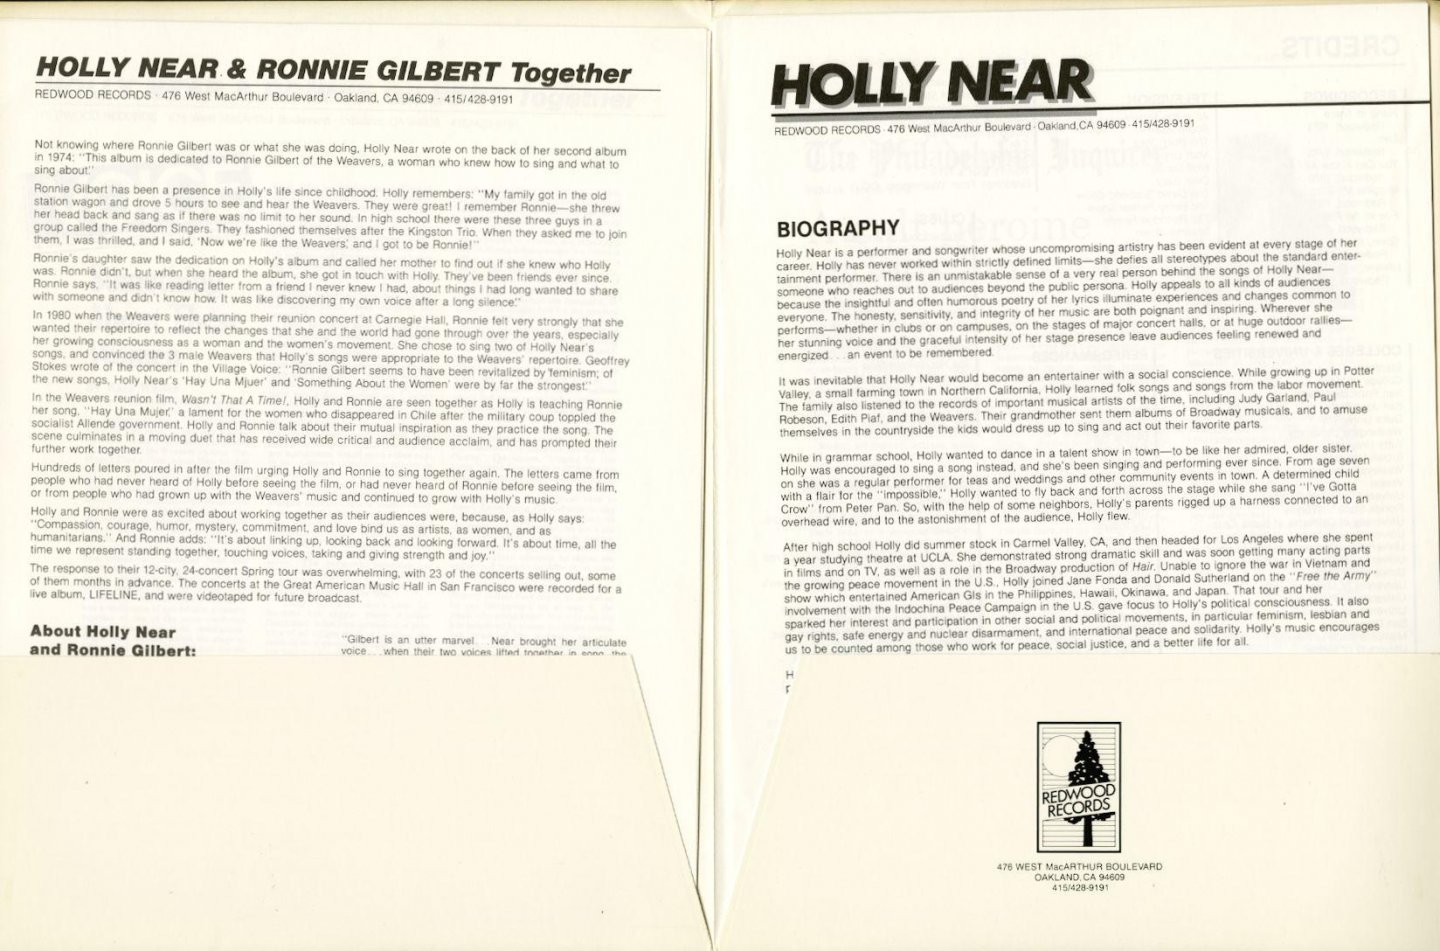 Near, Holly & Ronnie Gilbert - LIFELINE Holly Near, Ronnie Gilbert together